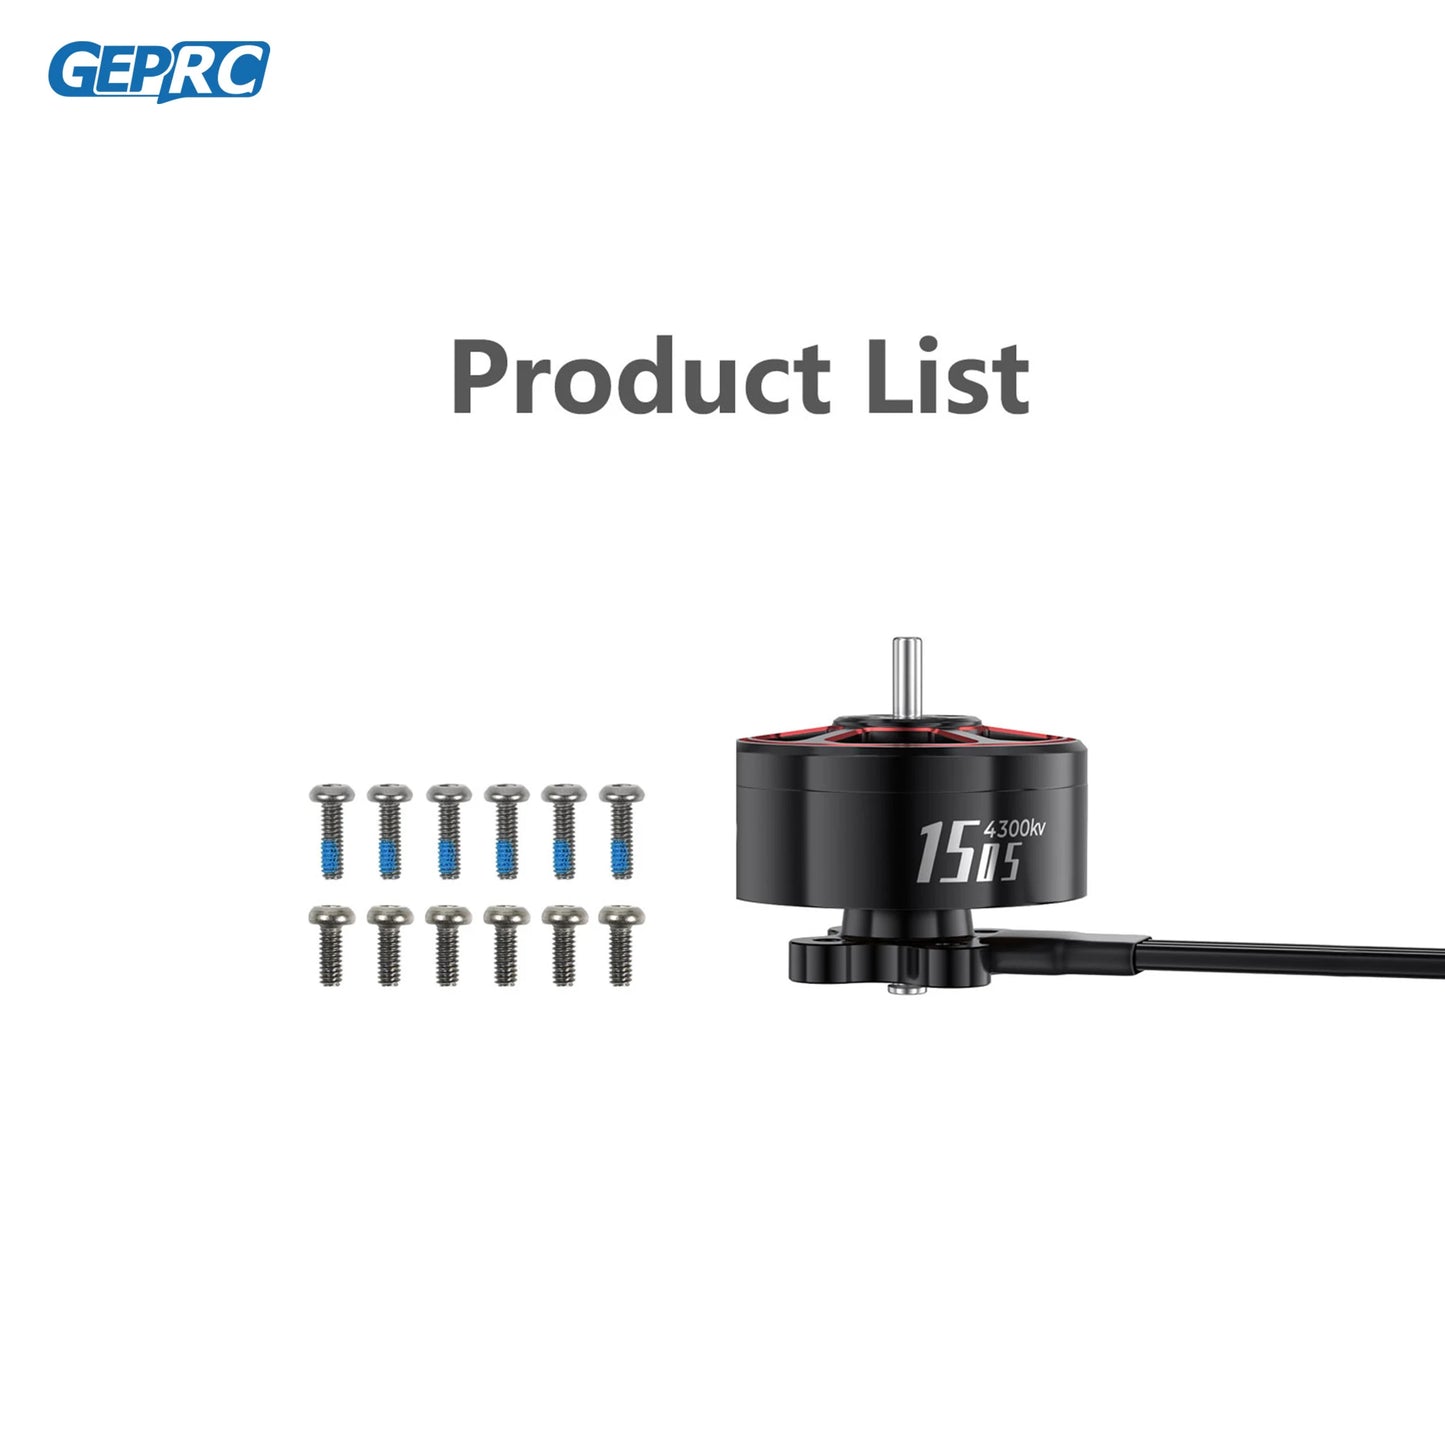 GEPRC Product List TTTT 1515 4300kv TTttt